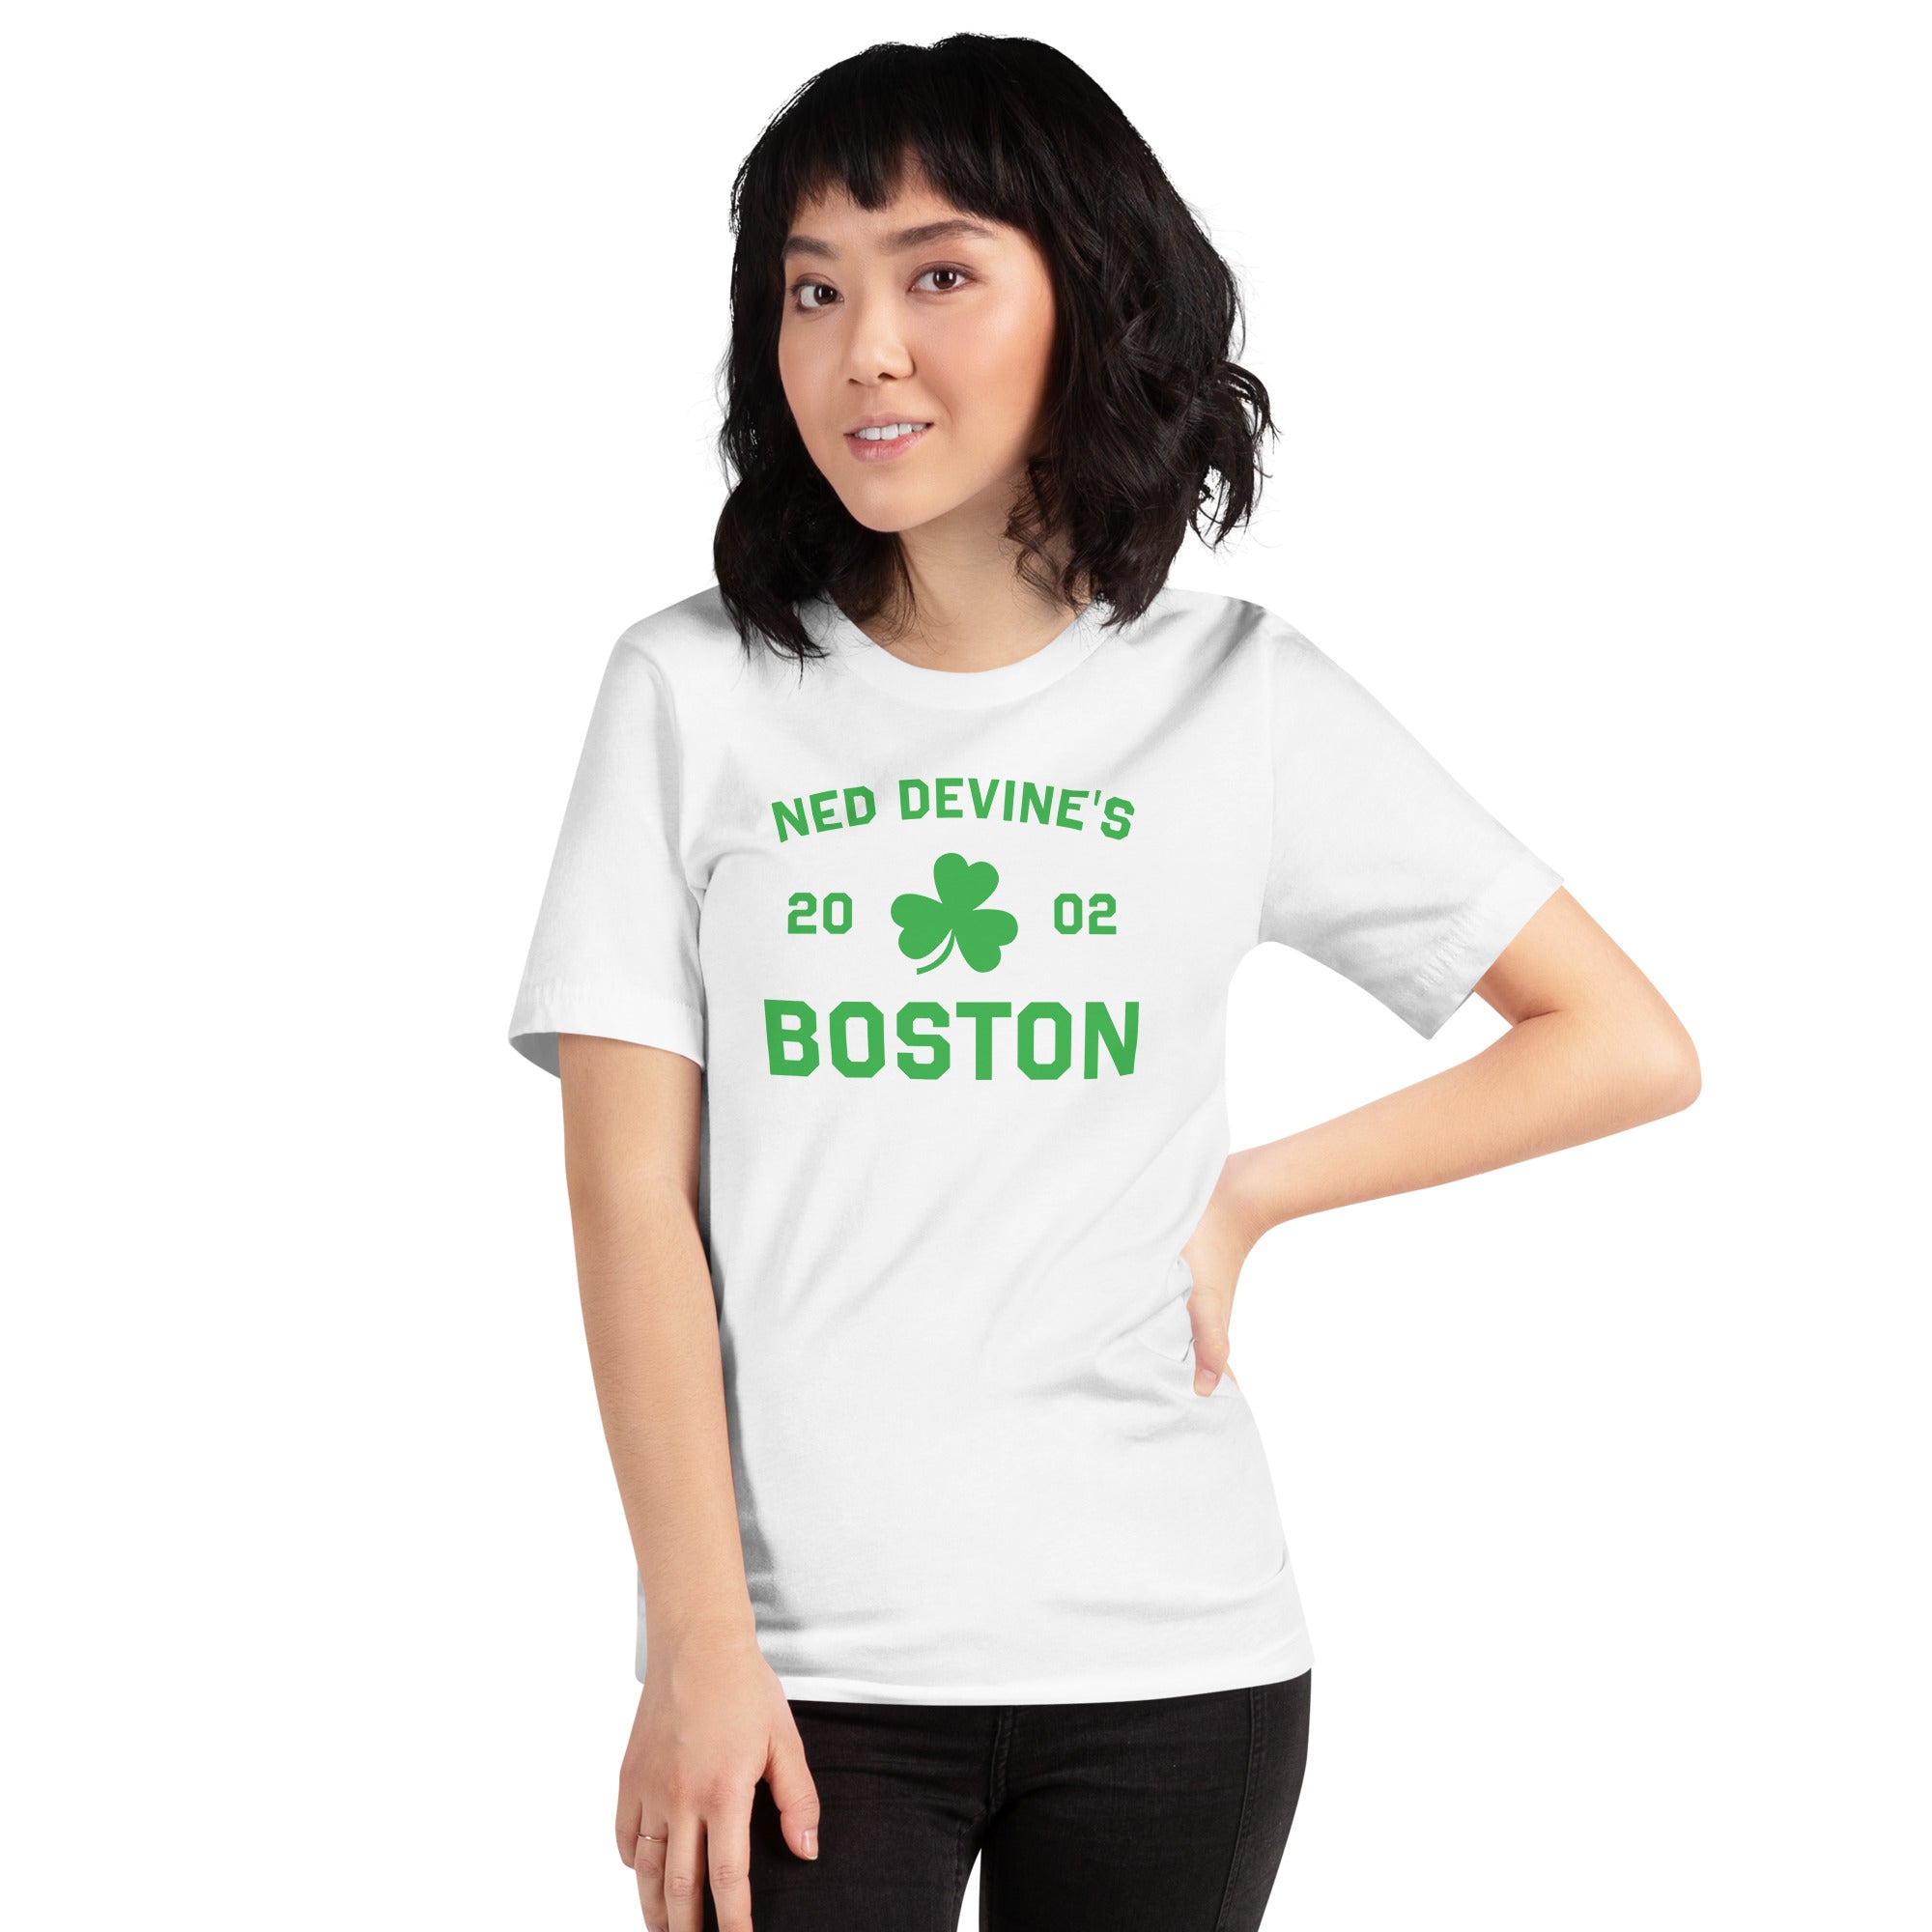 Auto Pasen Productie Ned Devine's St. Patrick's Day T-Shirt – Briar Group Shop